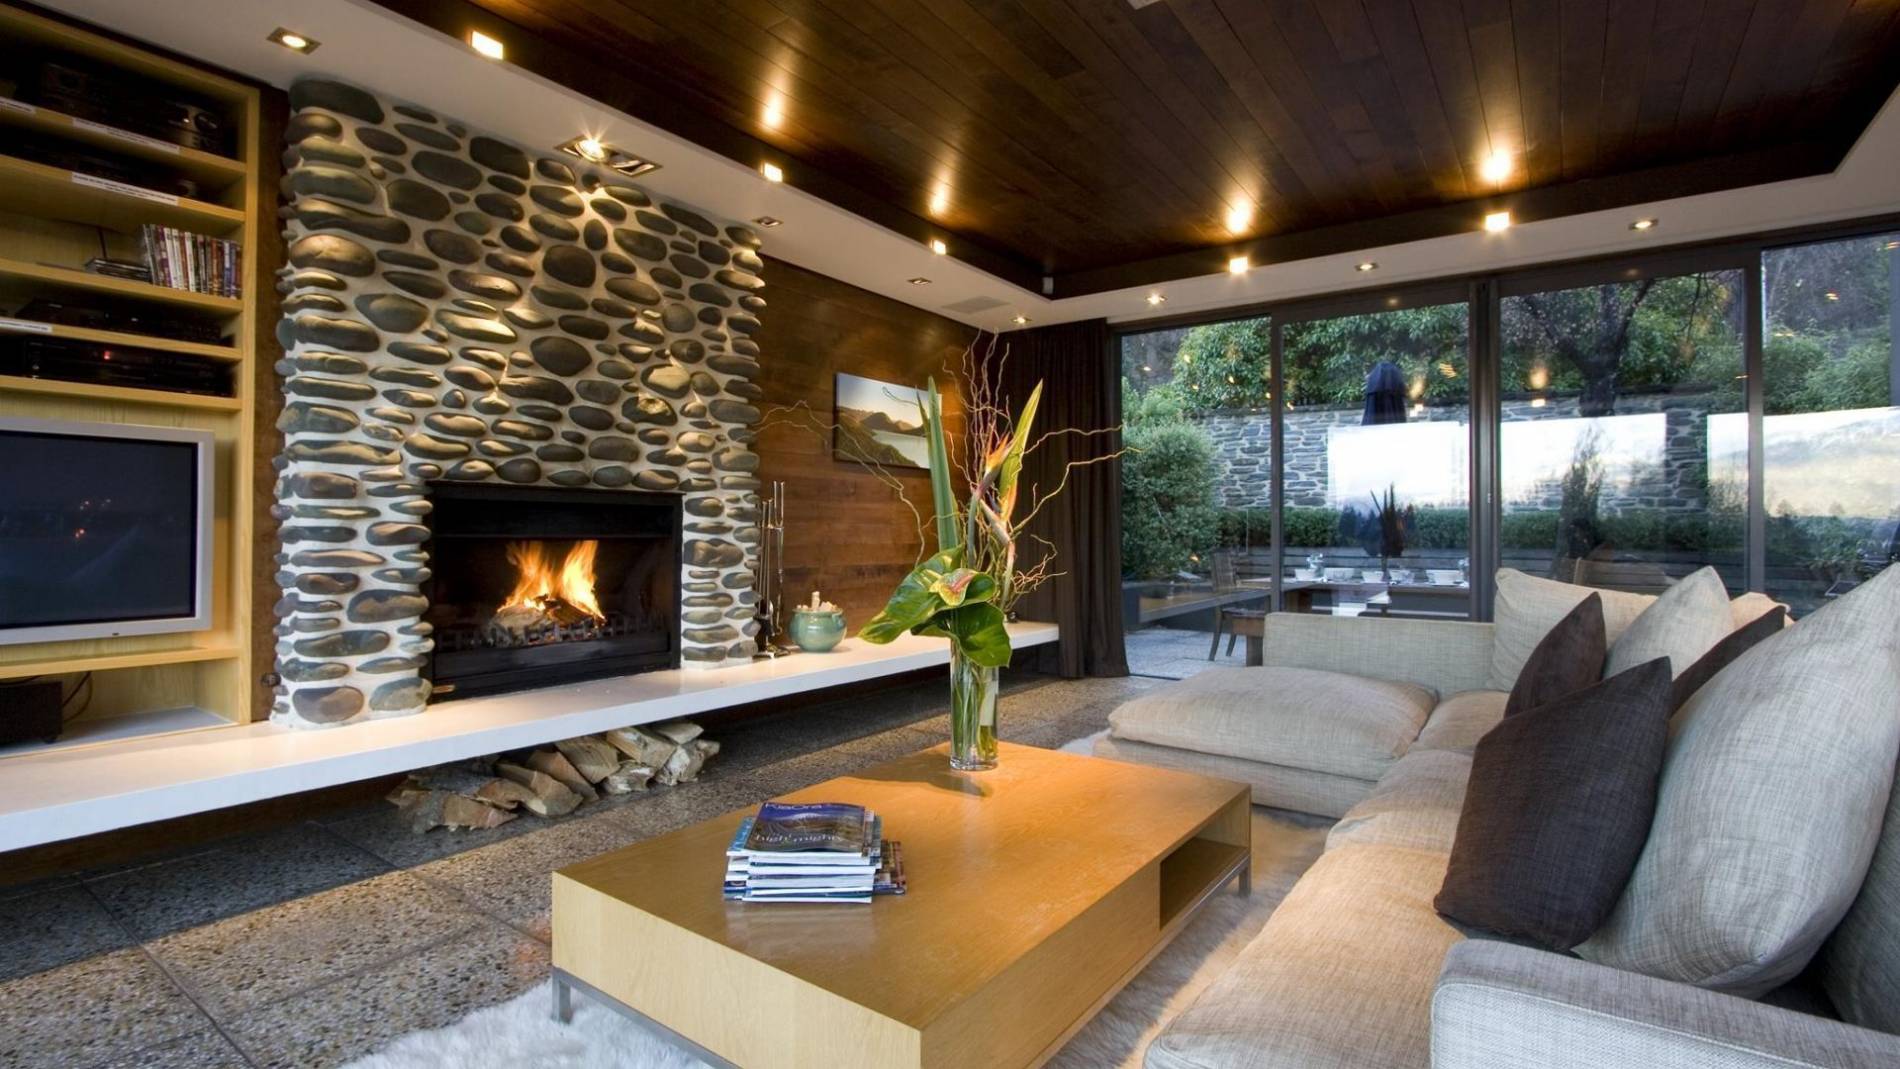 Luxury 3 Bedroom Private Villa in Queenstown, New Zealand - VillaGetaways